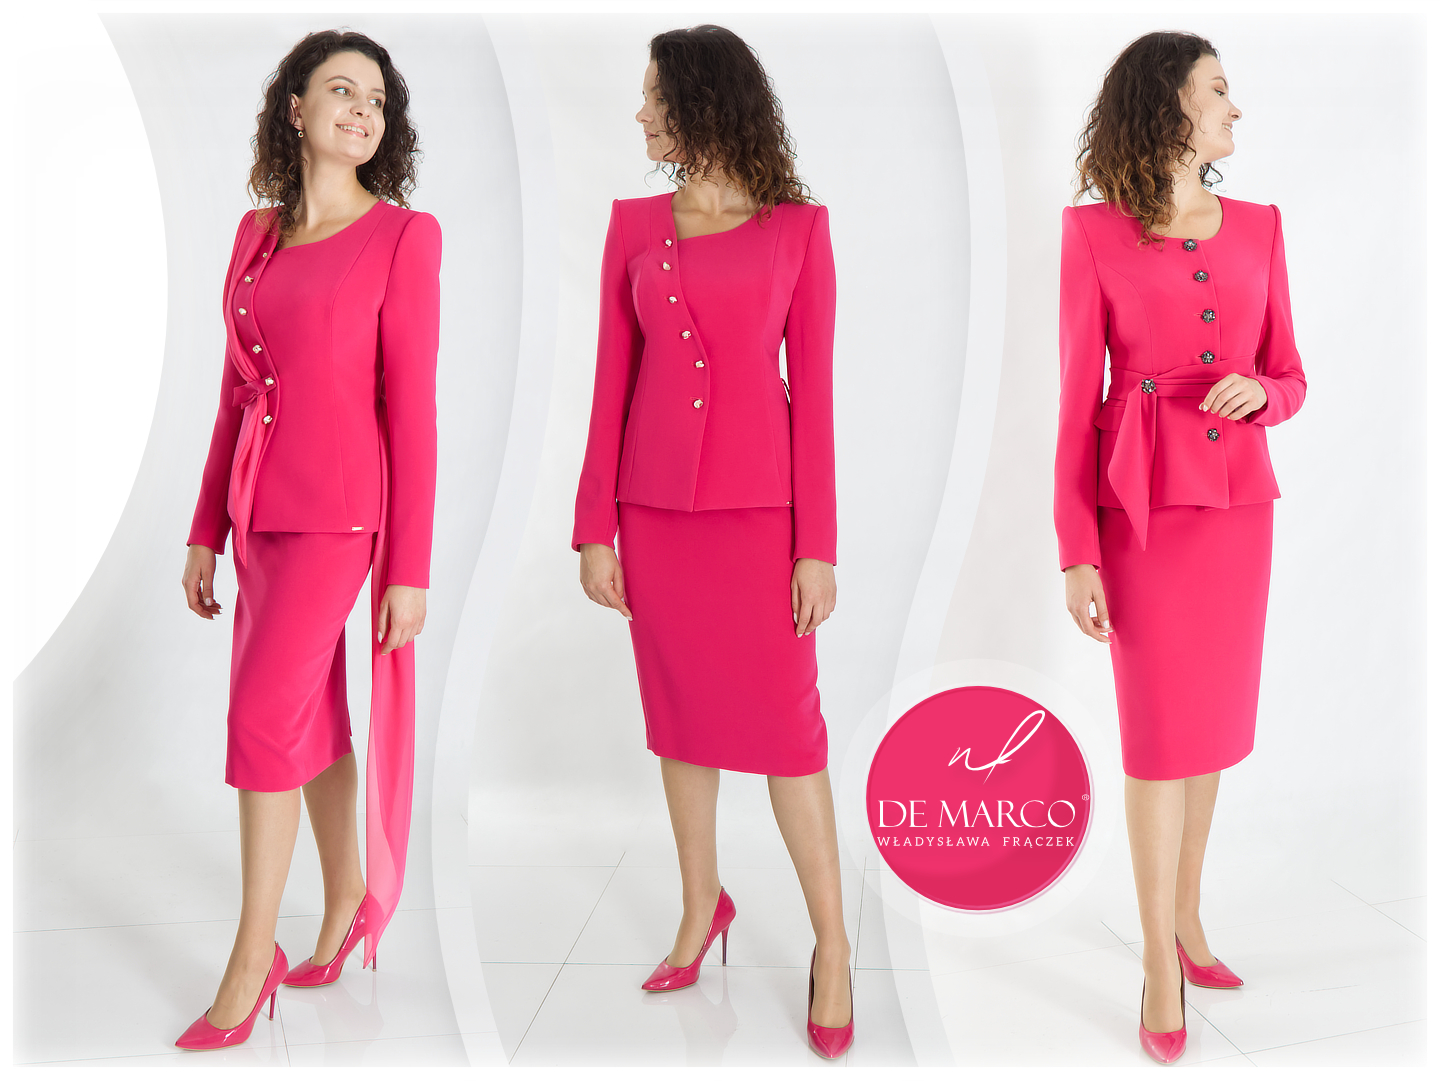 Gdzie i kiedy można założyć stylizacje w intensywnych kolorach? Różowe garsonki damskie nowoczesne stylizacje na jubileusz, inaugurację przejście na emeryturę.